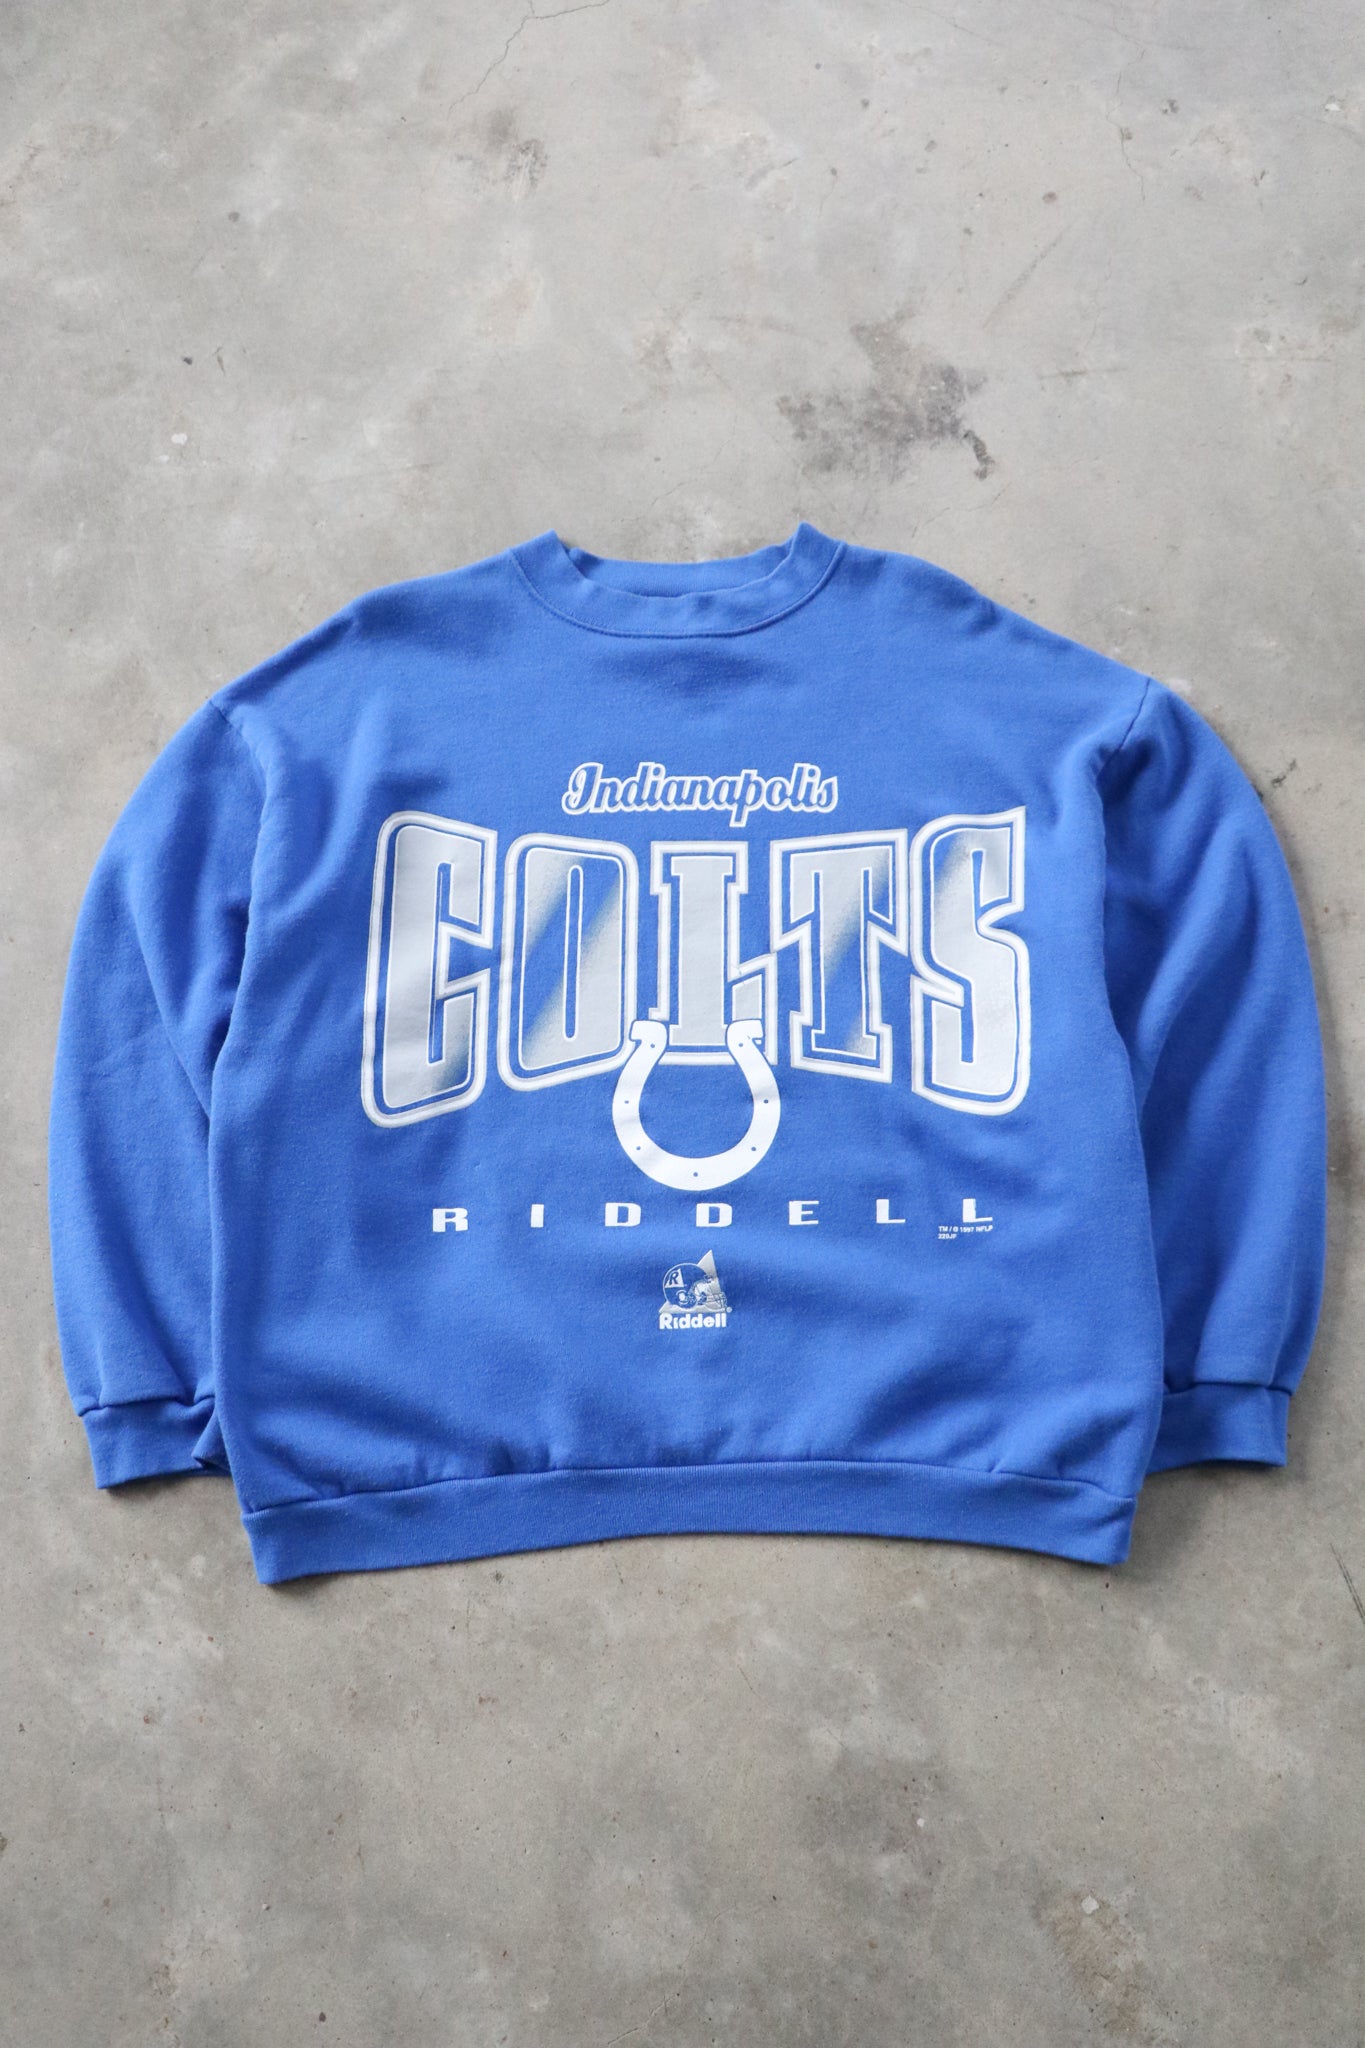 Vintage 1997 Colts NFL Sweater Large